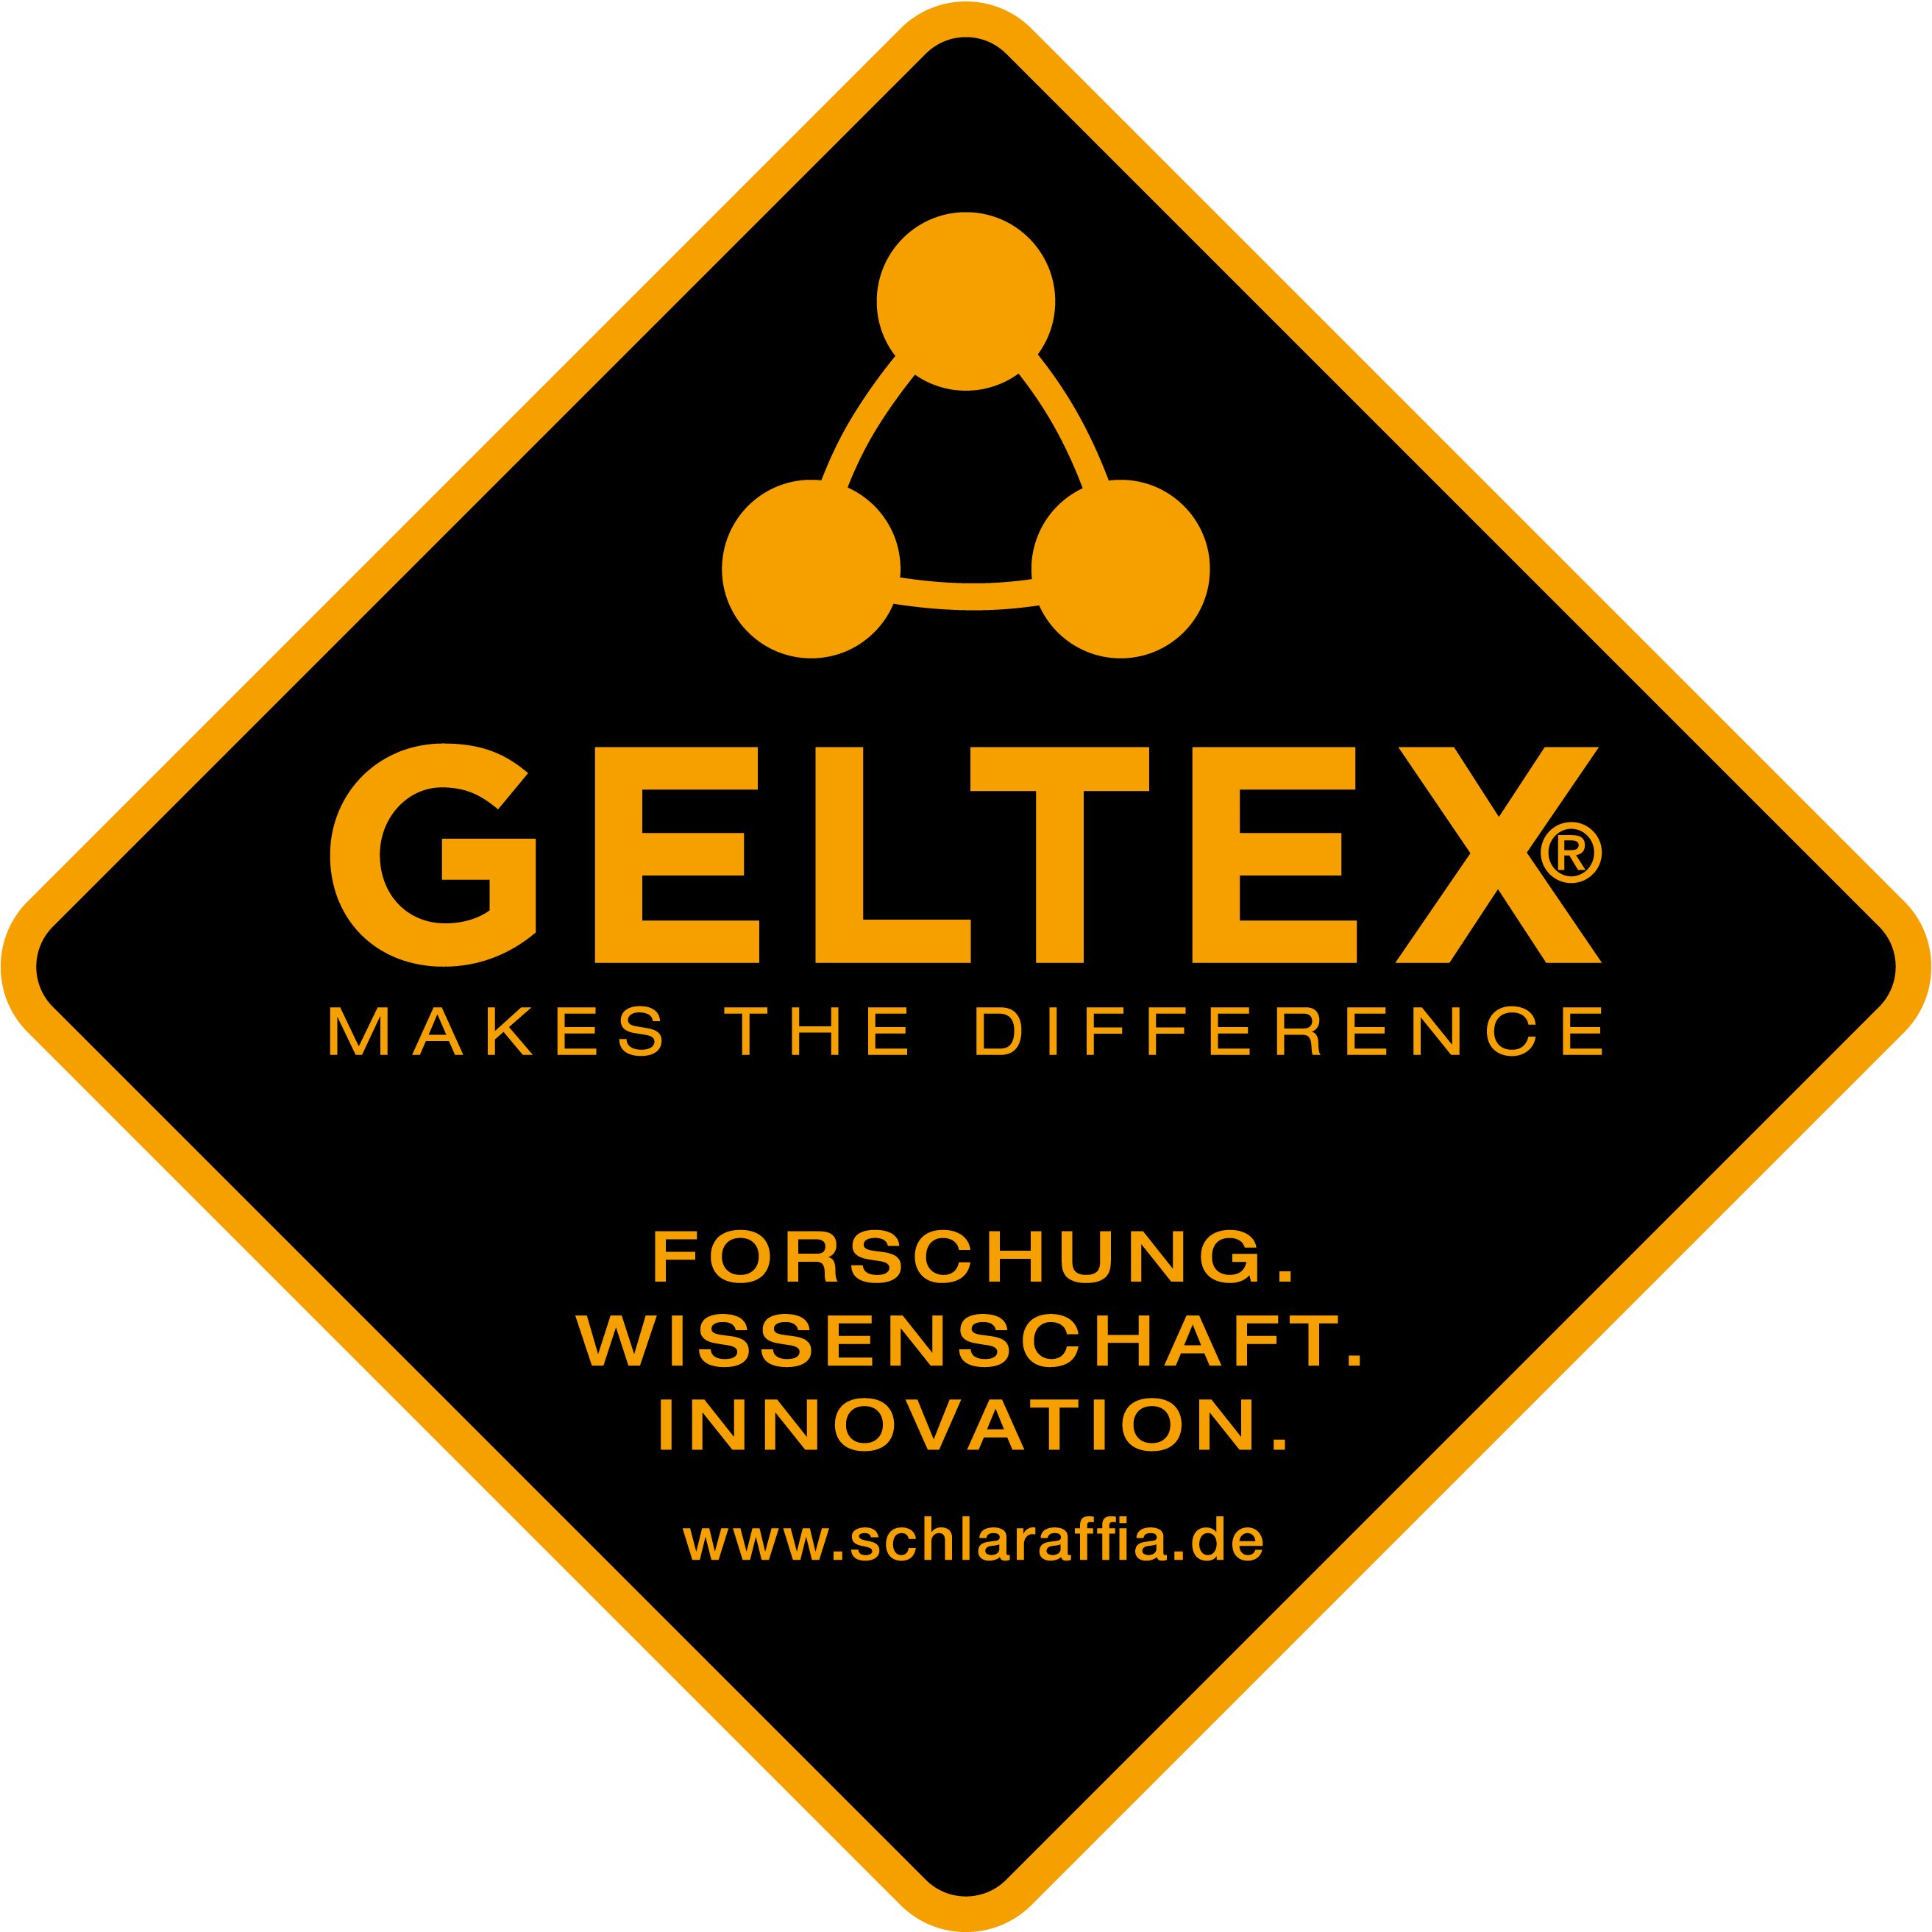 Taschenfederkernmatratze GELTEX® Quantum erhältlich! auch in Größen 220 vielen hoch, Touch 22 cm Next in Sondergrößen TFK, Schlaraffia, 90x200, und 140x200